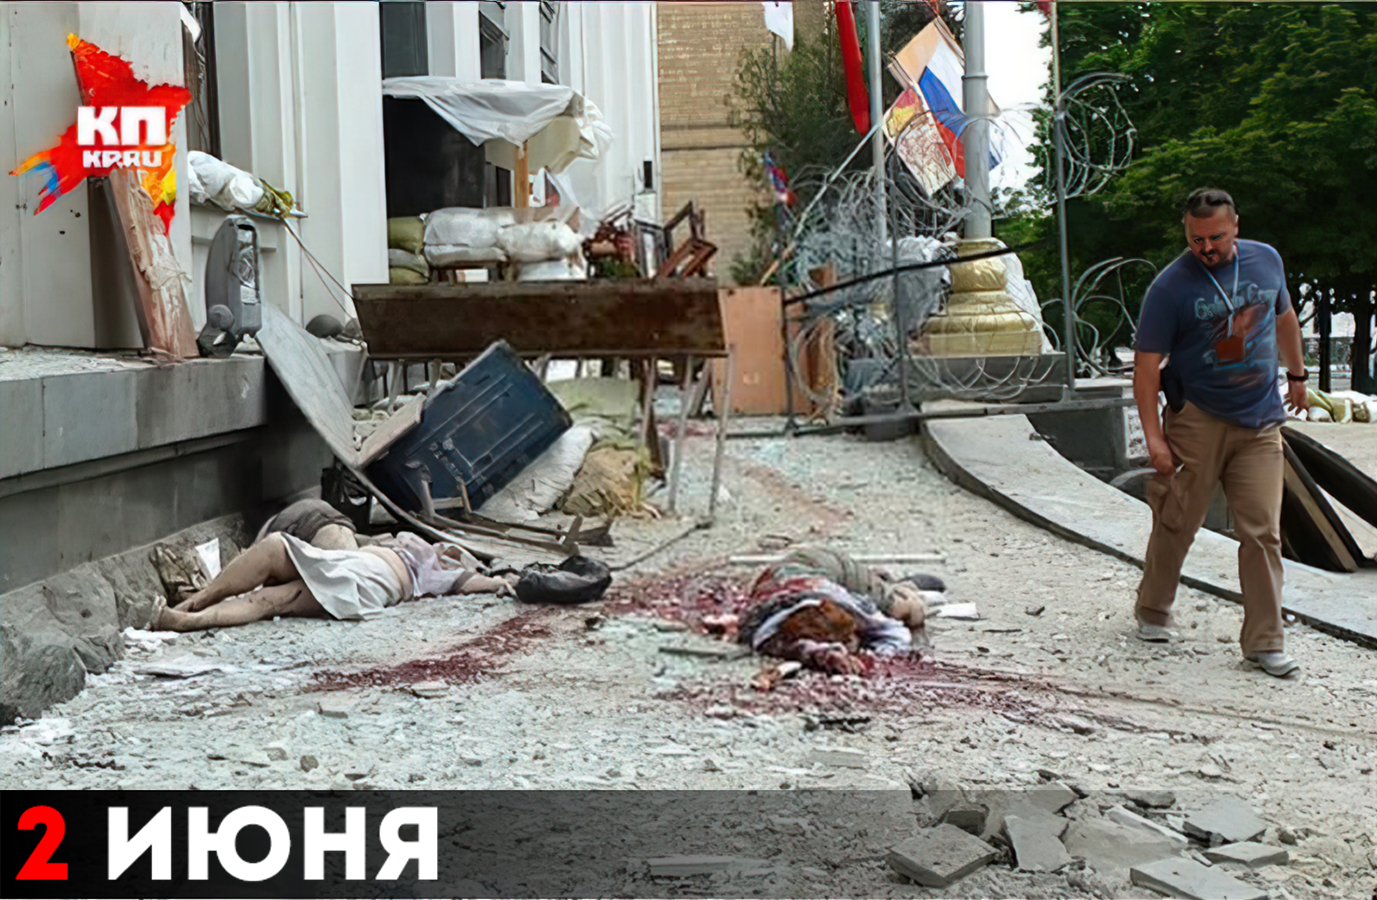 Последствия авиаудара по зданию ОГА в Луганске 2 июня 2014 года